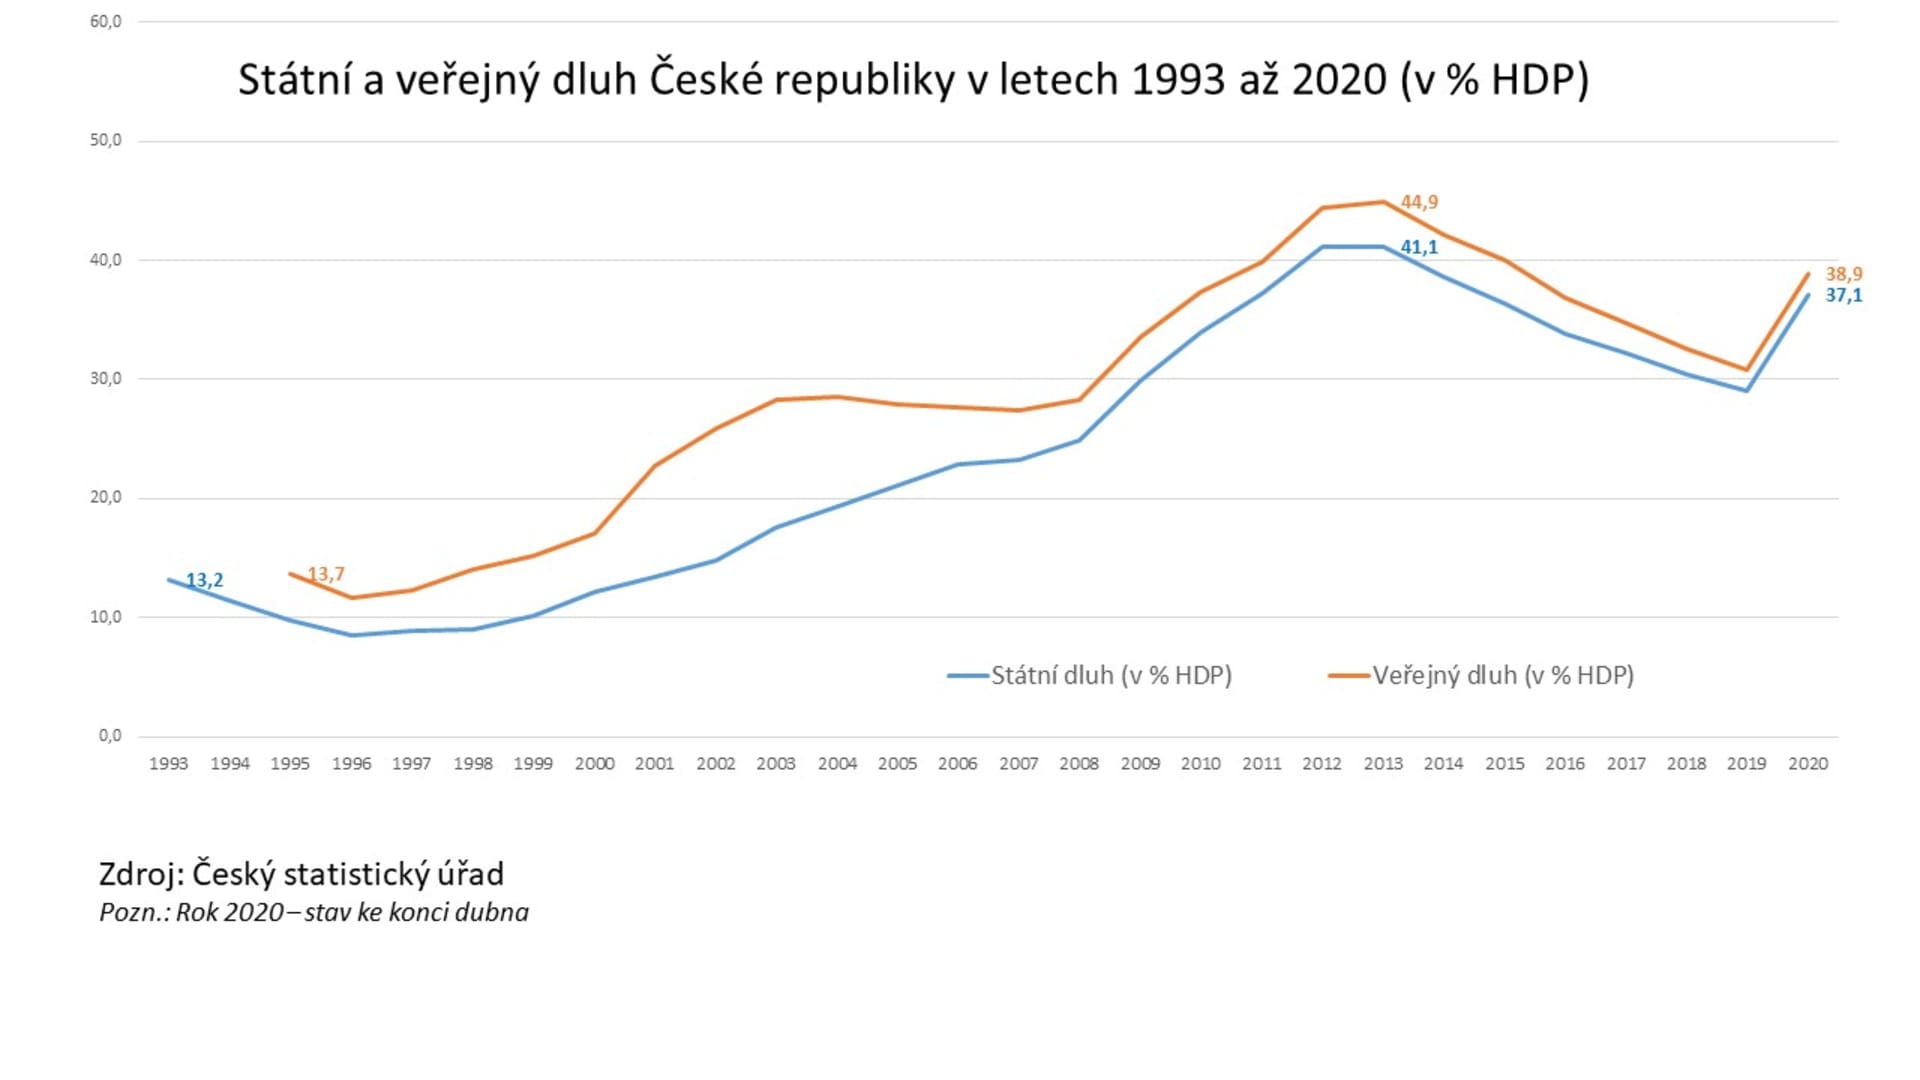 Vývoj státního a veřejného dluhu České republiky v poměru k HDP.